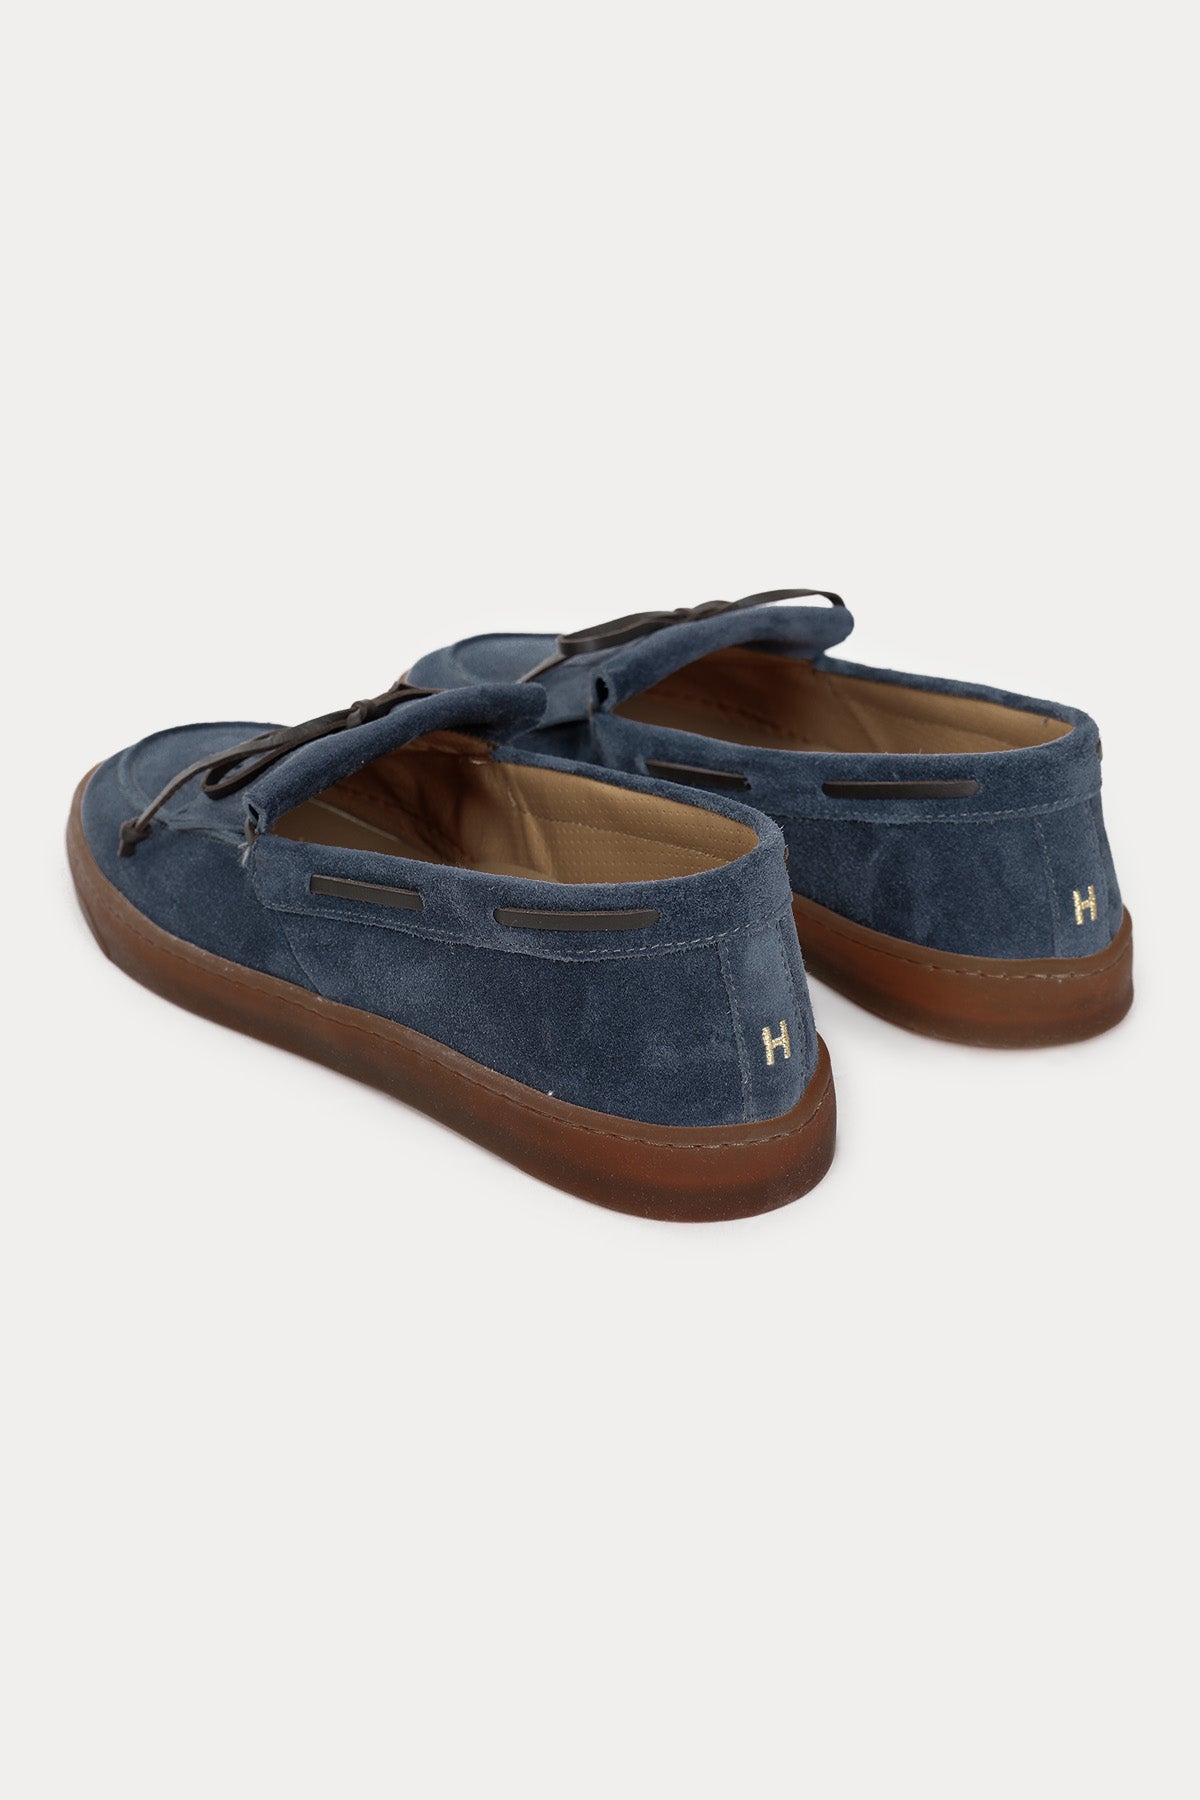 Henderson Idra Deri Bağcıklı Püsküllü Süet Loafer Ayakkabı-Libas Trendy Fashion Store